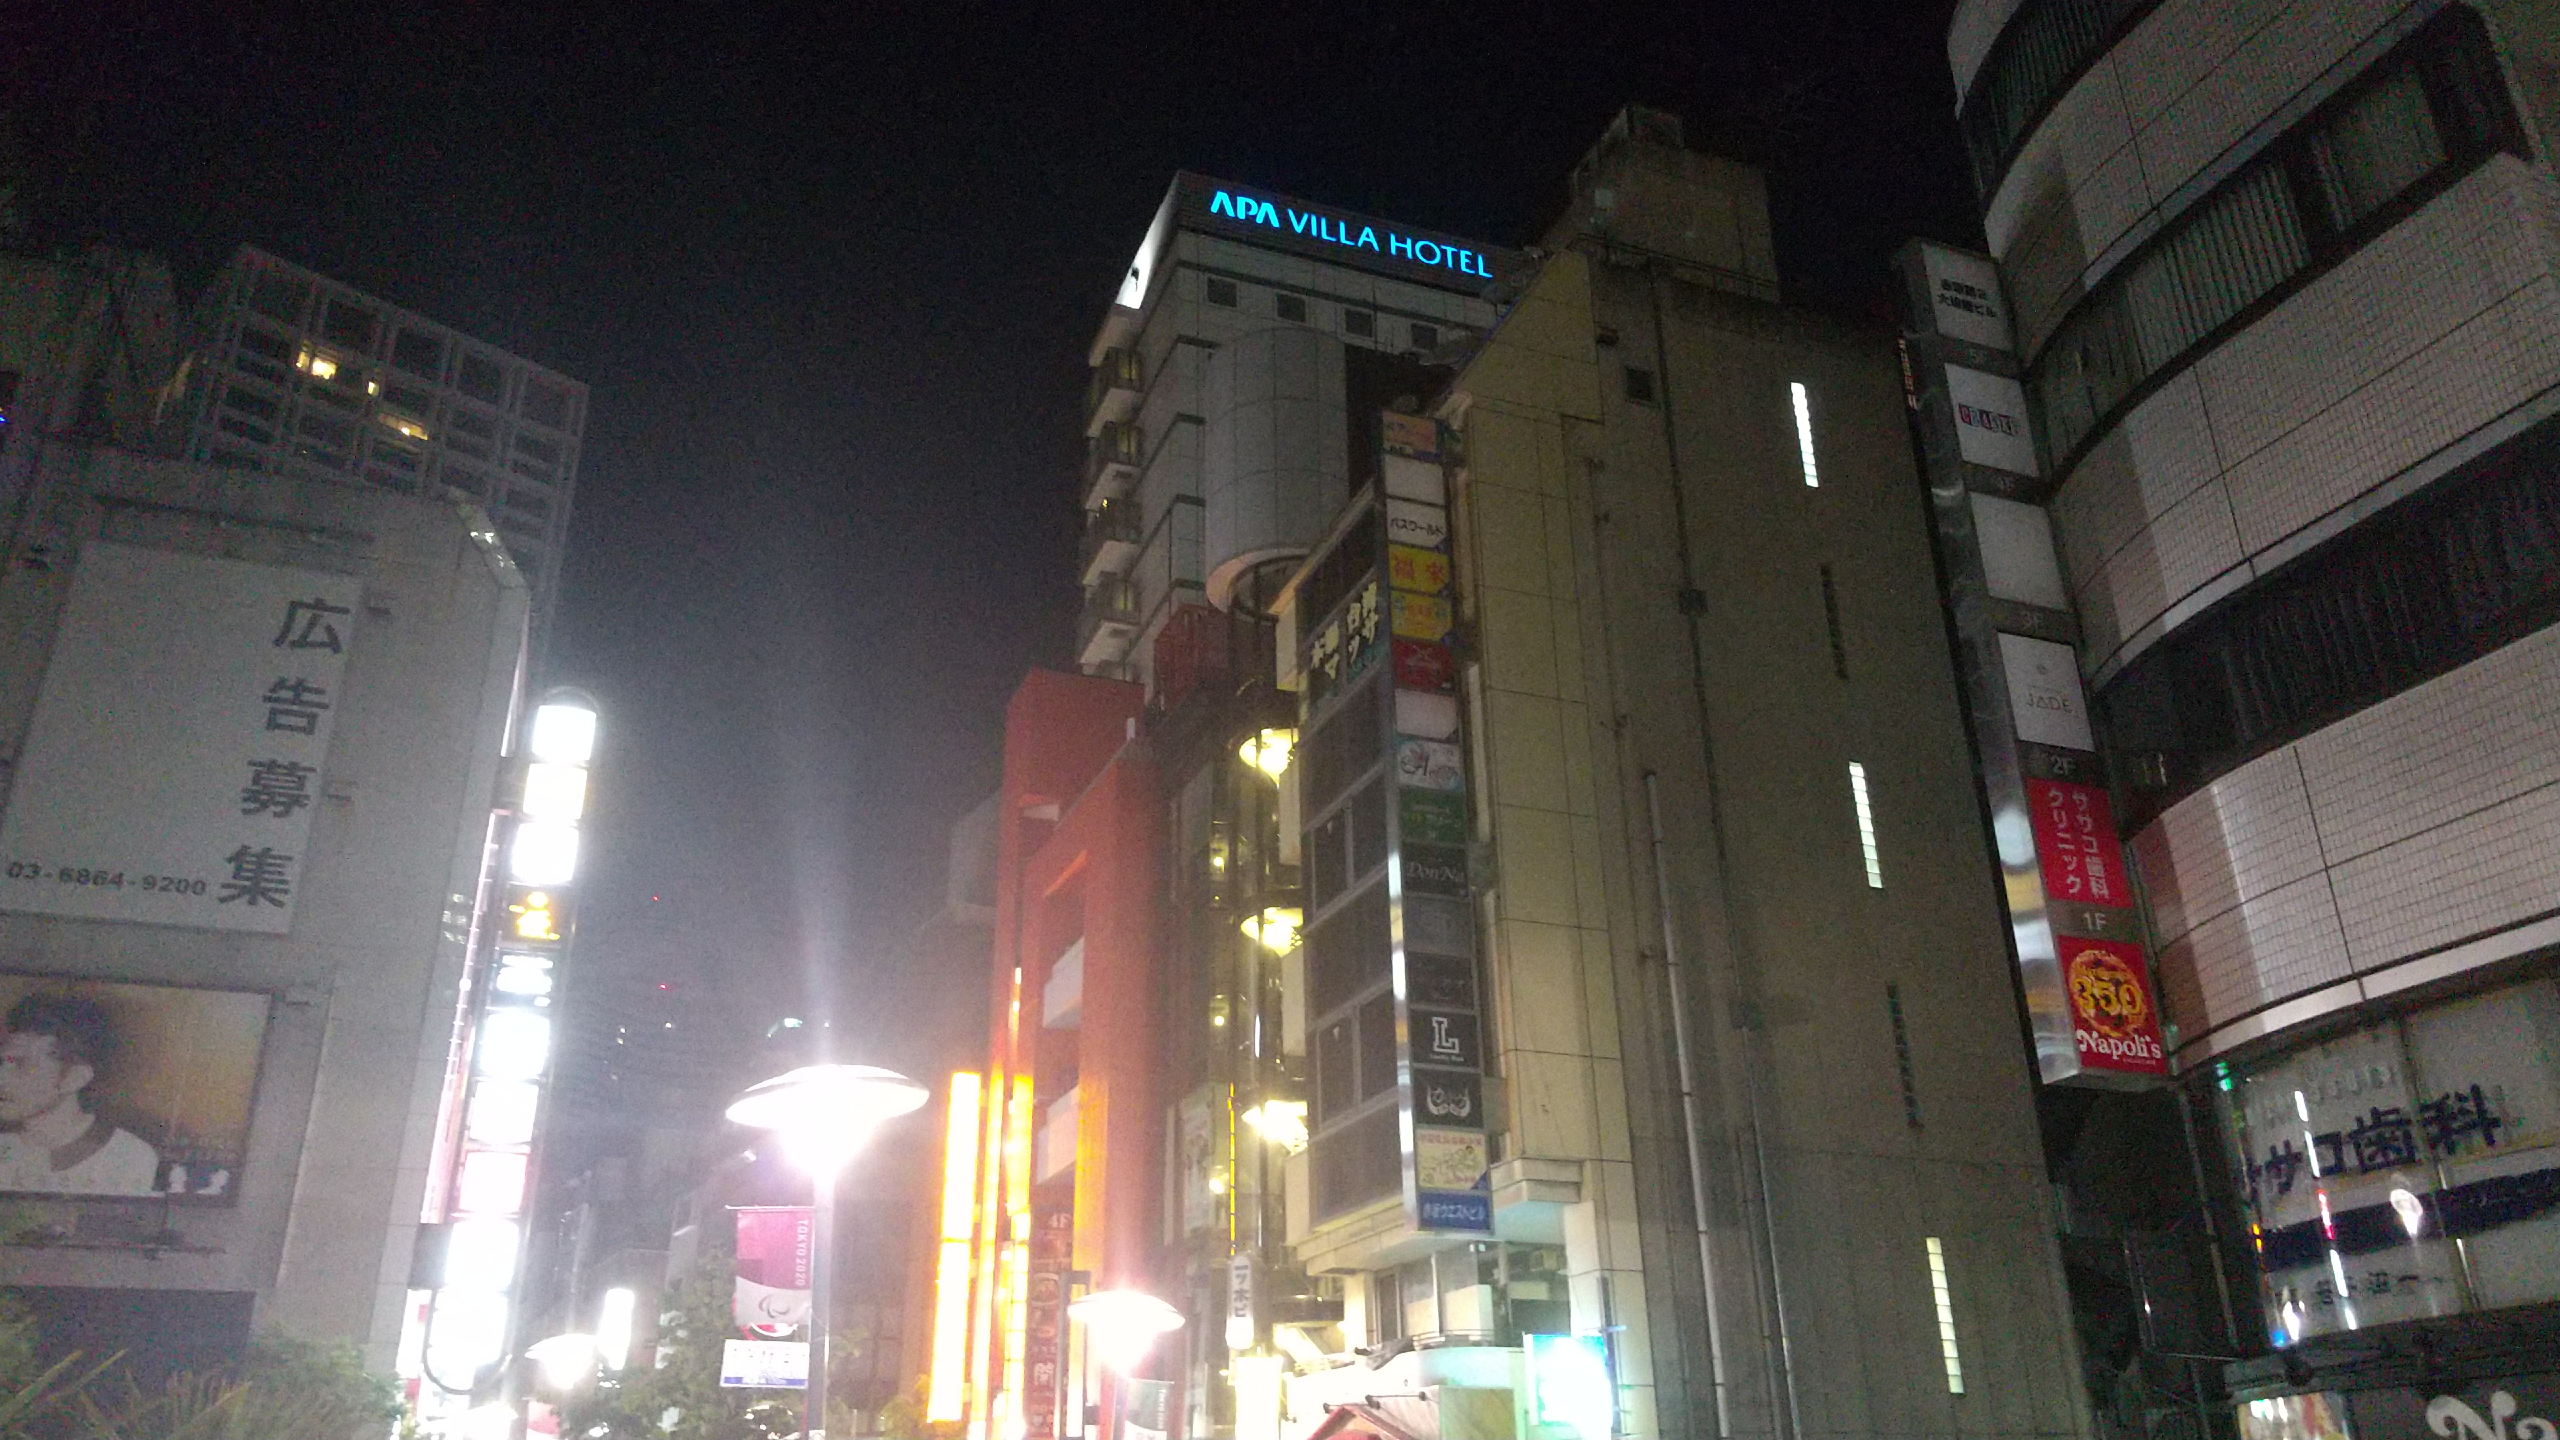 ■赤坂駅からの道順5：上を見て頂くとホテル建物・看板が見えてきます。